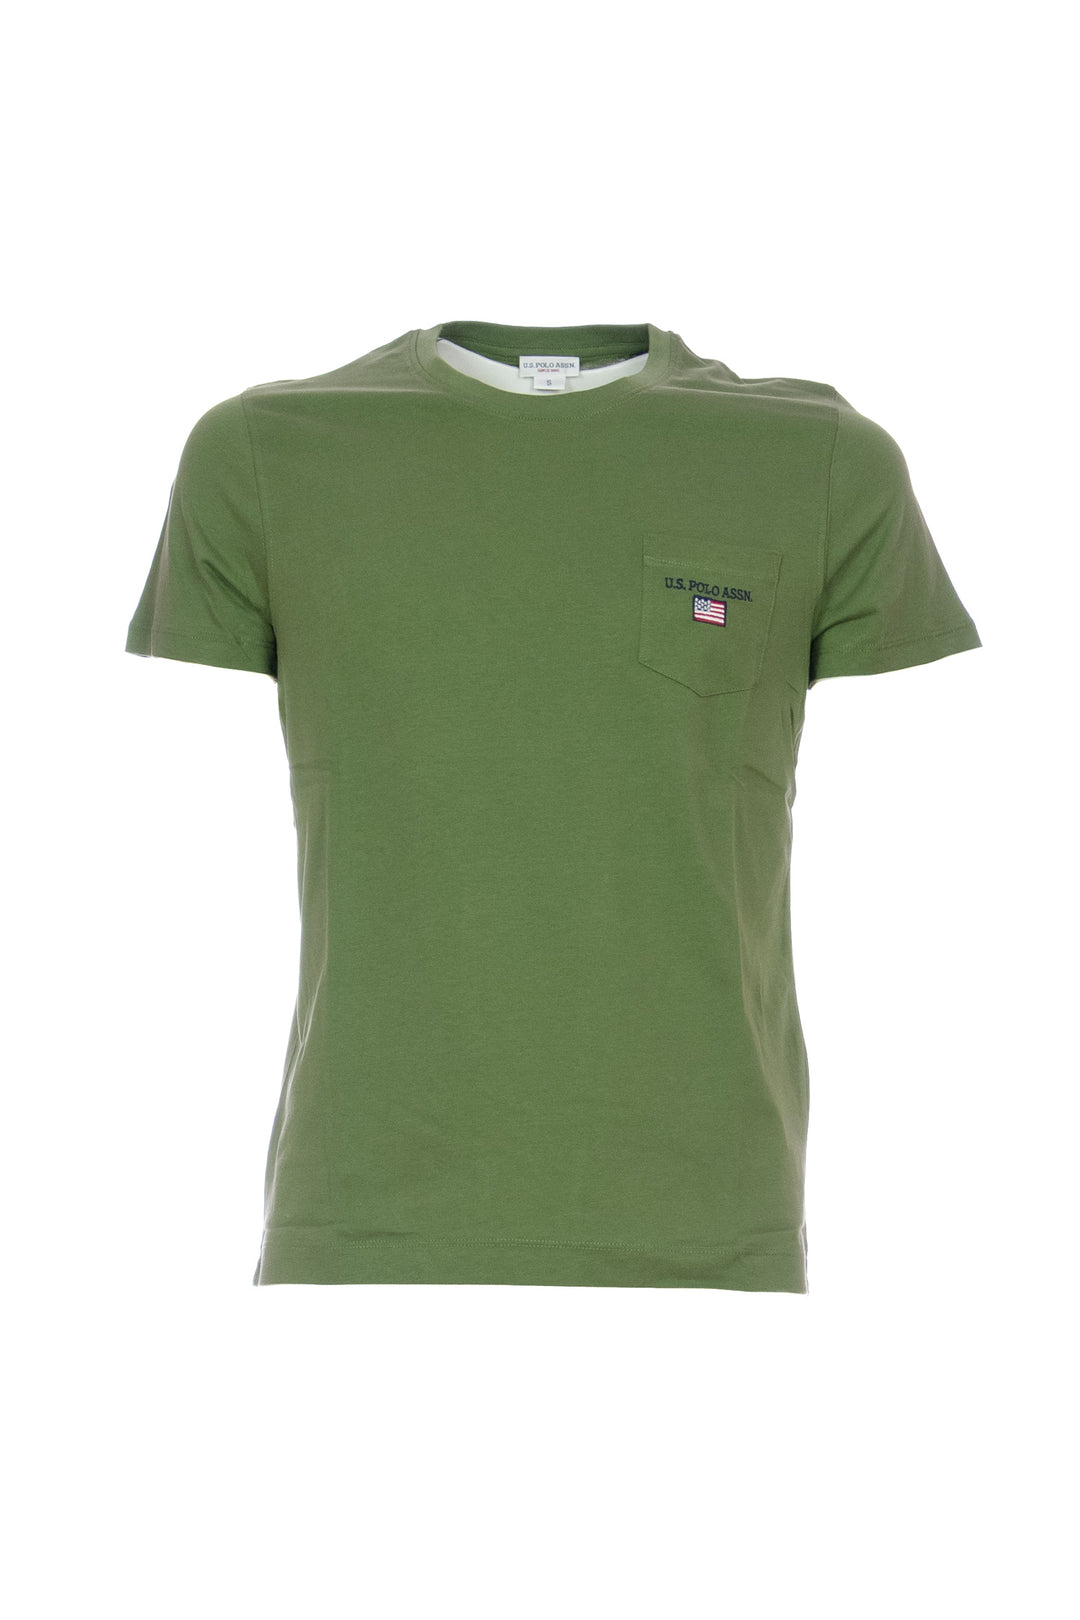 U.S. POLO ASSN. T-shirt verde militare in cotone con taschino sul petto - Mancinelli 1954